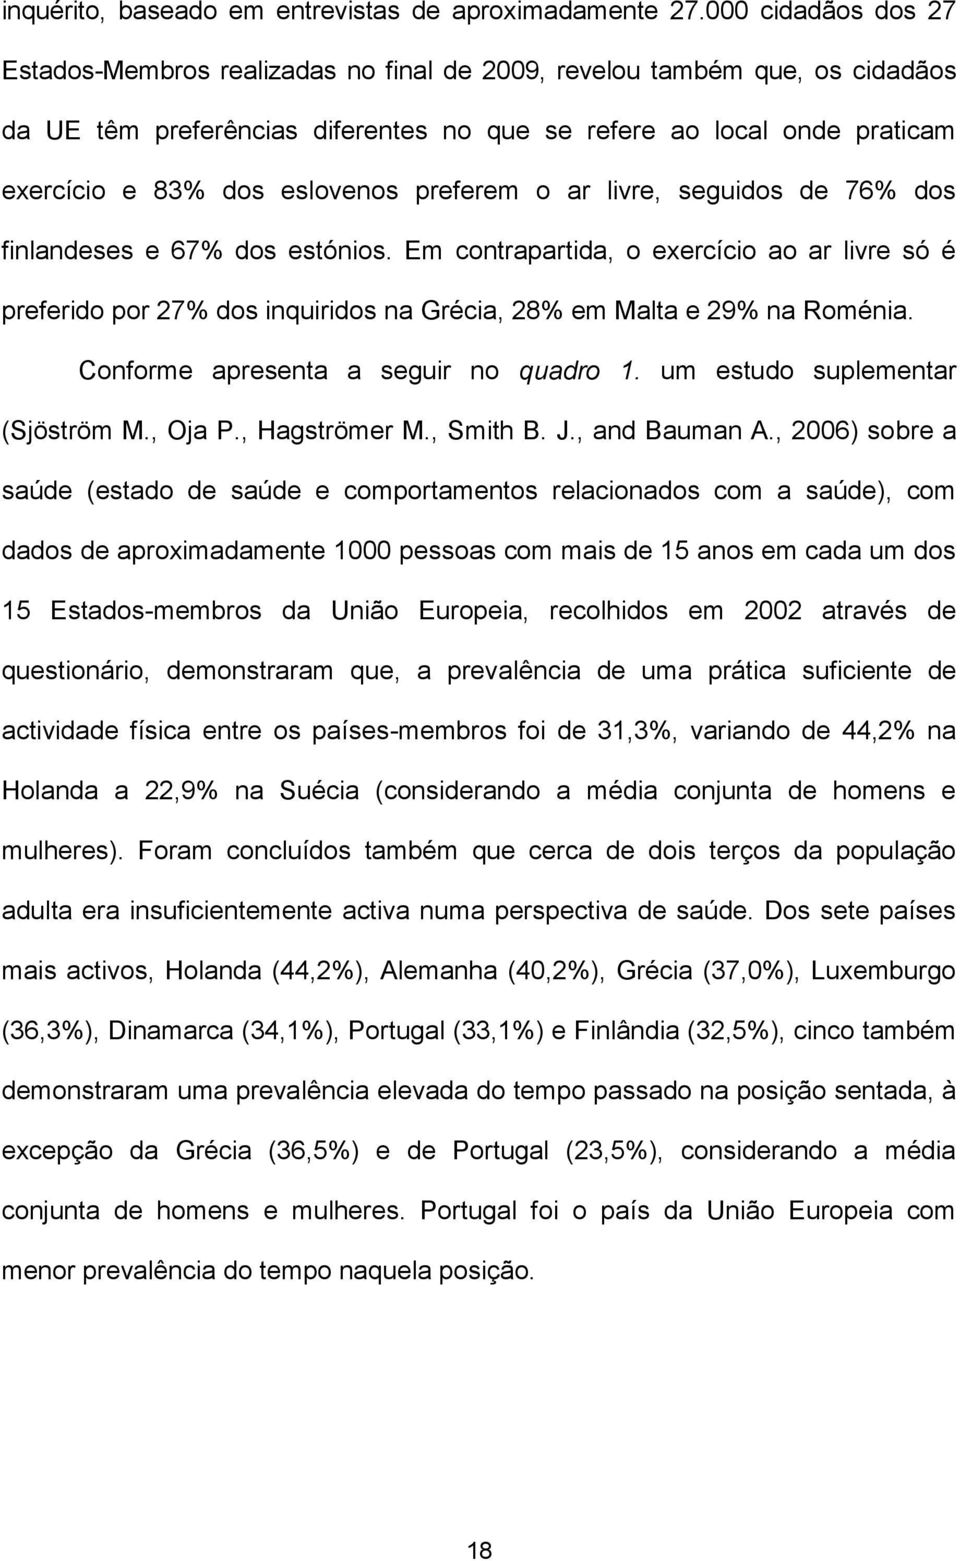 eslovenos preferem o ar livre, seguidos de 76% dos finlandeses e 67% dos estónios.